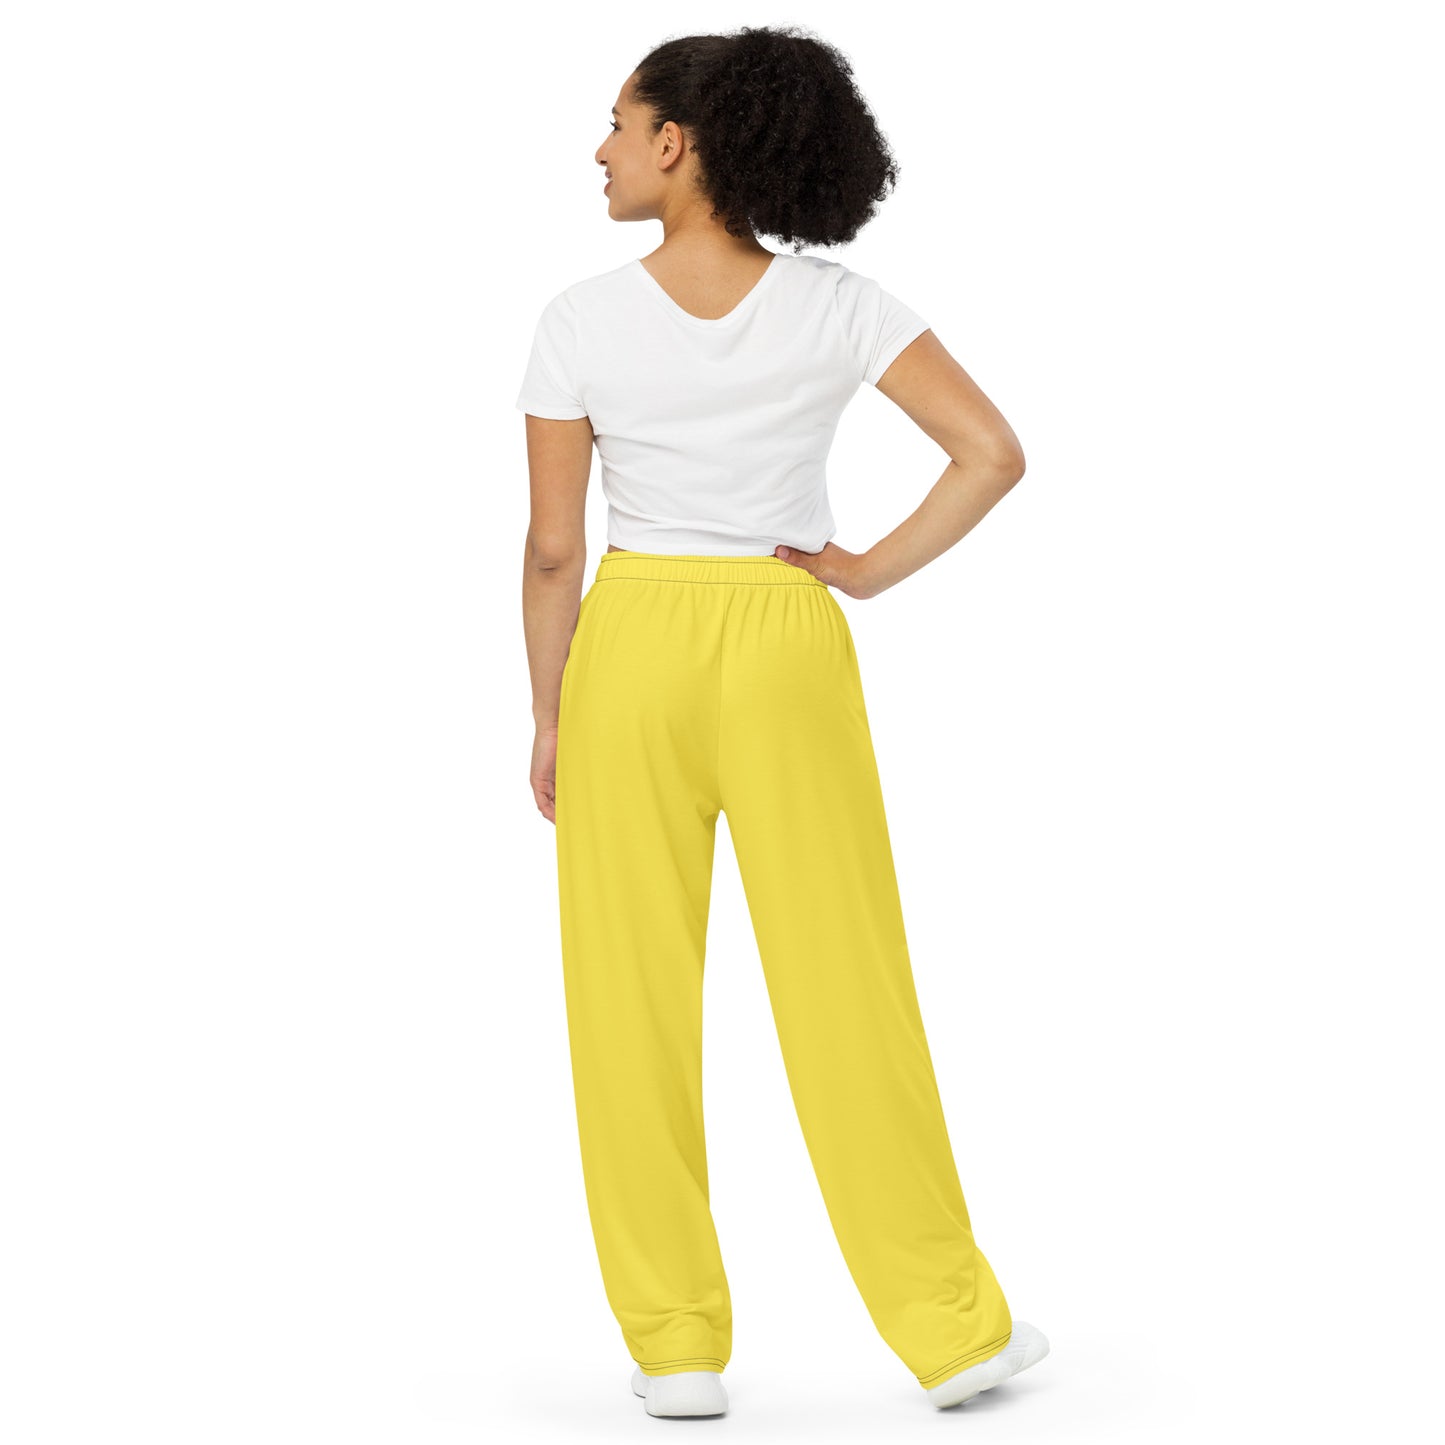 Yellow unisex wide-leg pants